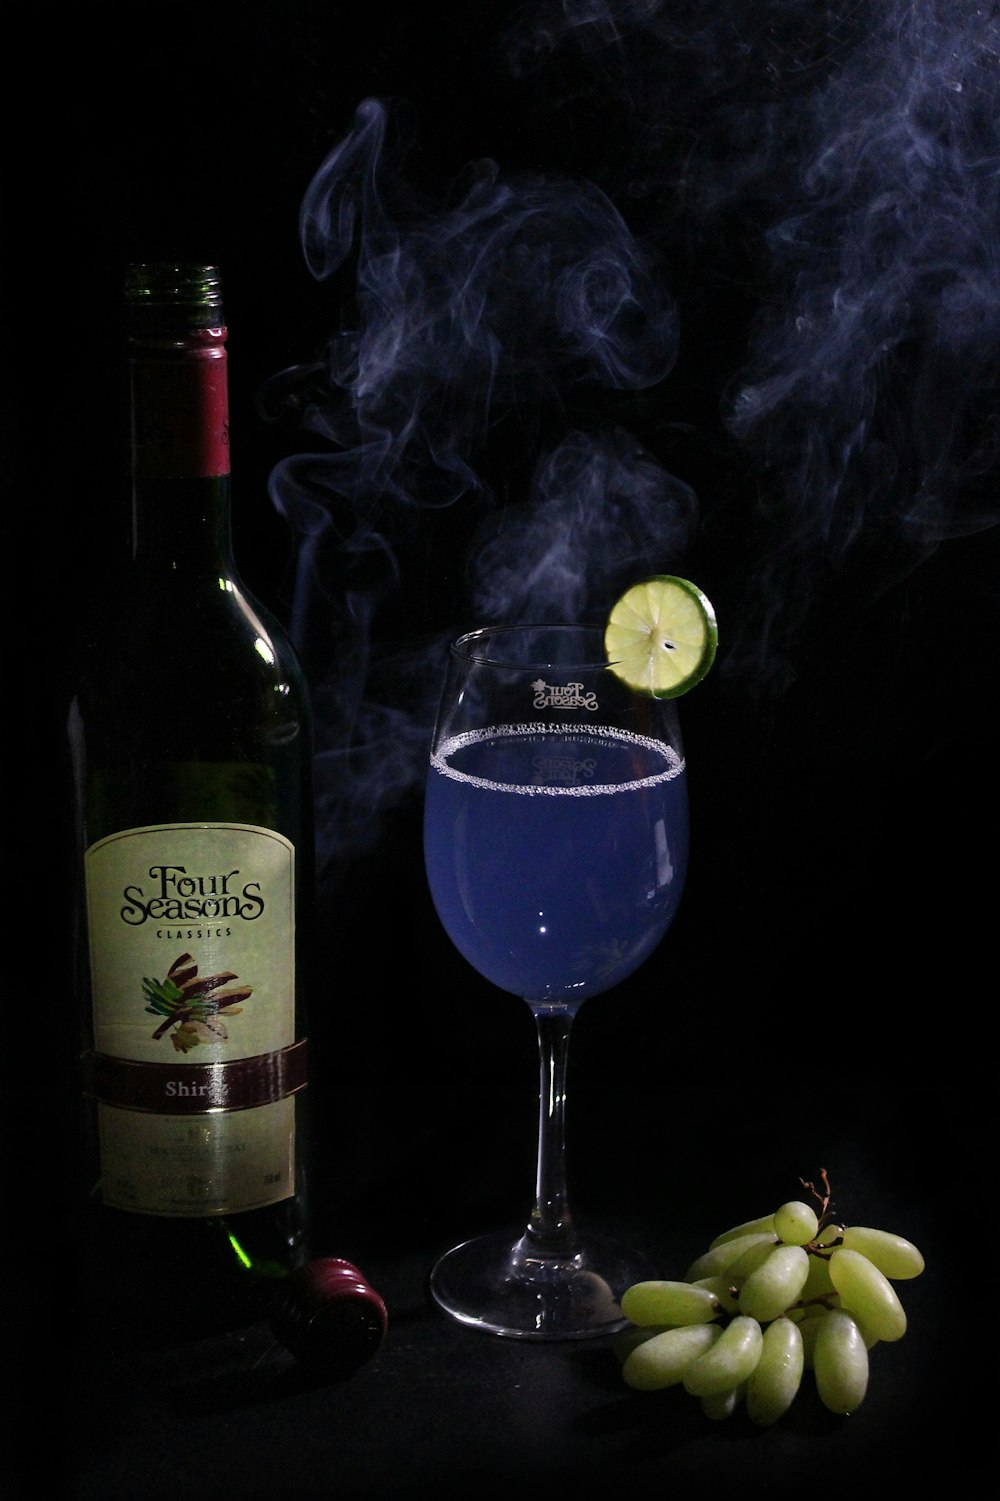 green wine bottle beside wine glass with purple smoke